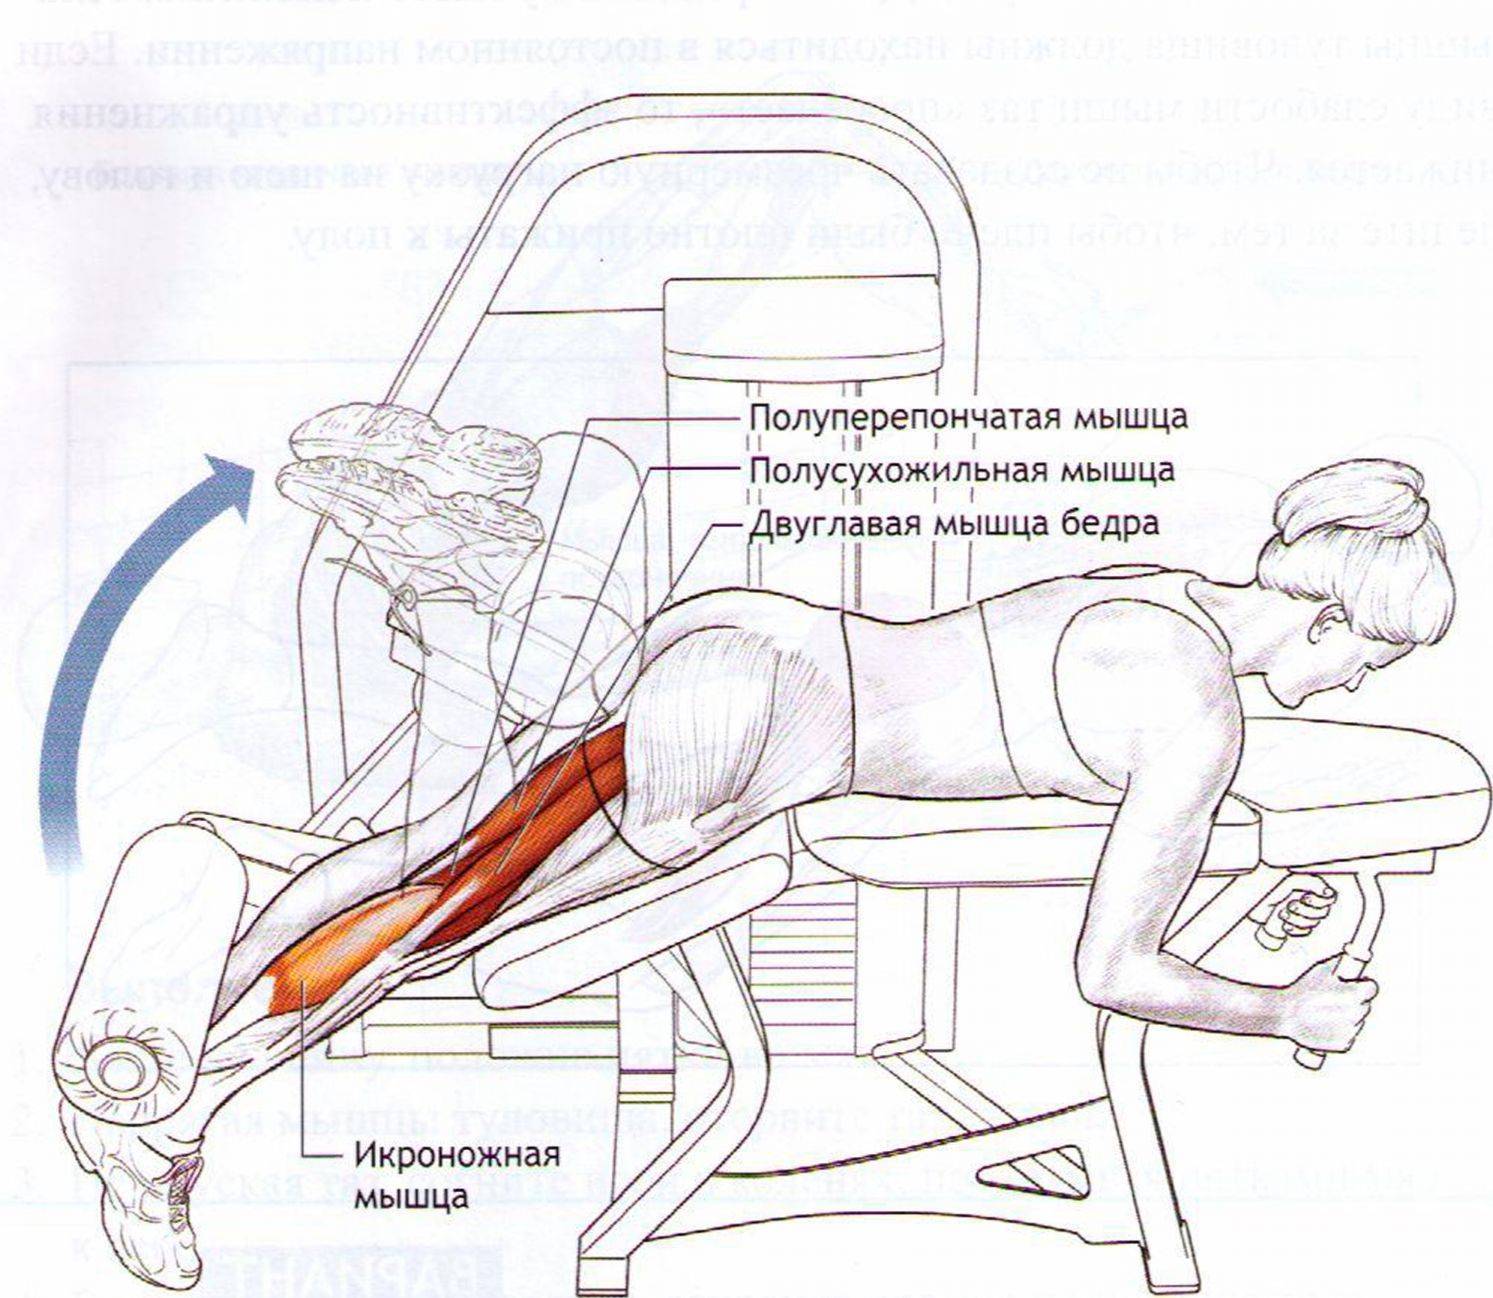 Жим ногами: платформы в тренажере лежа и сидя - техника выполнения, постановка ног